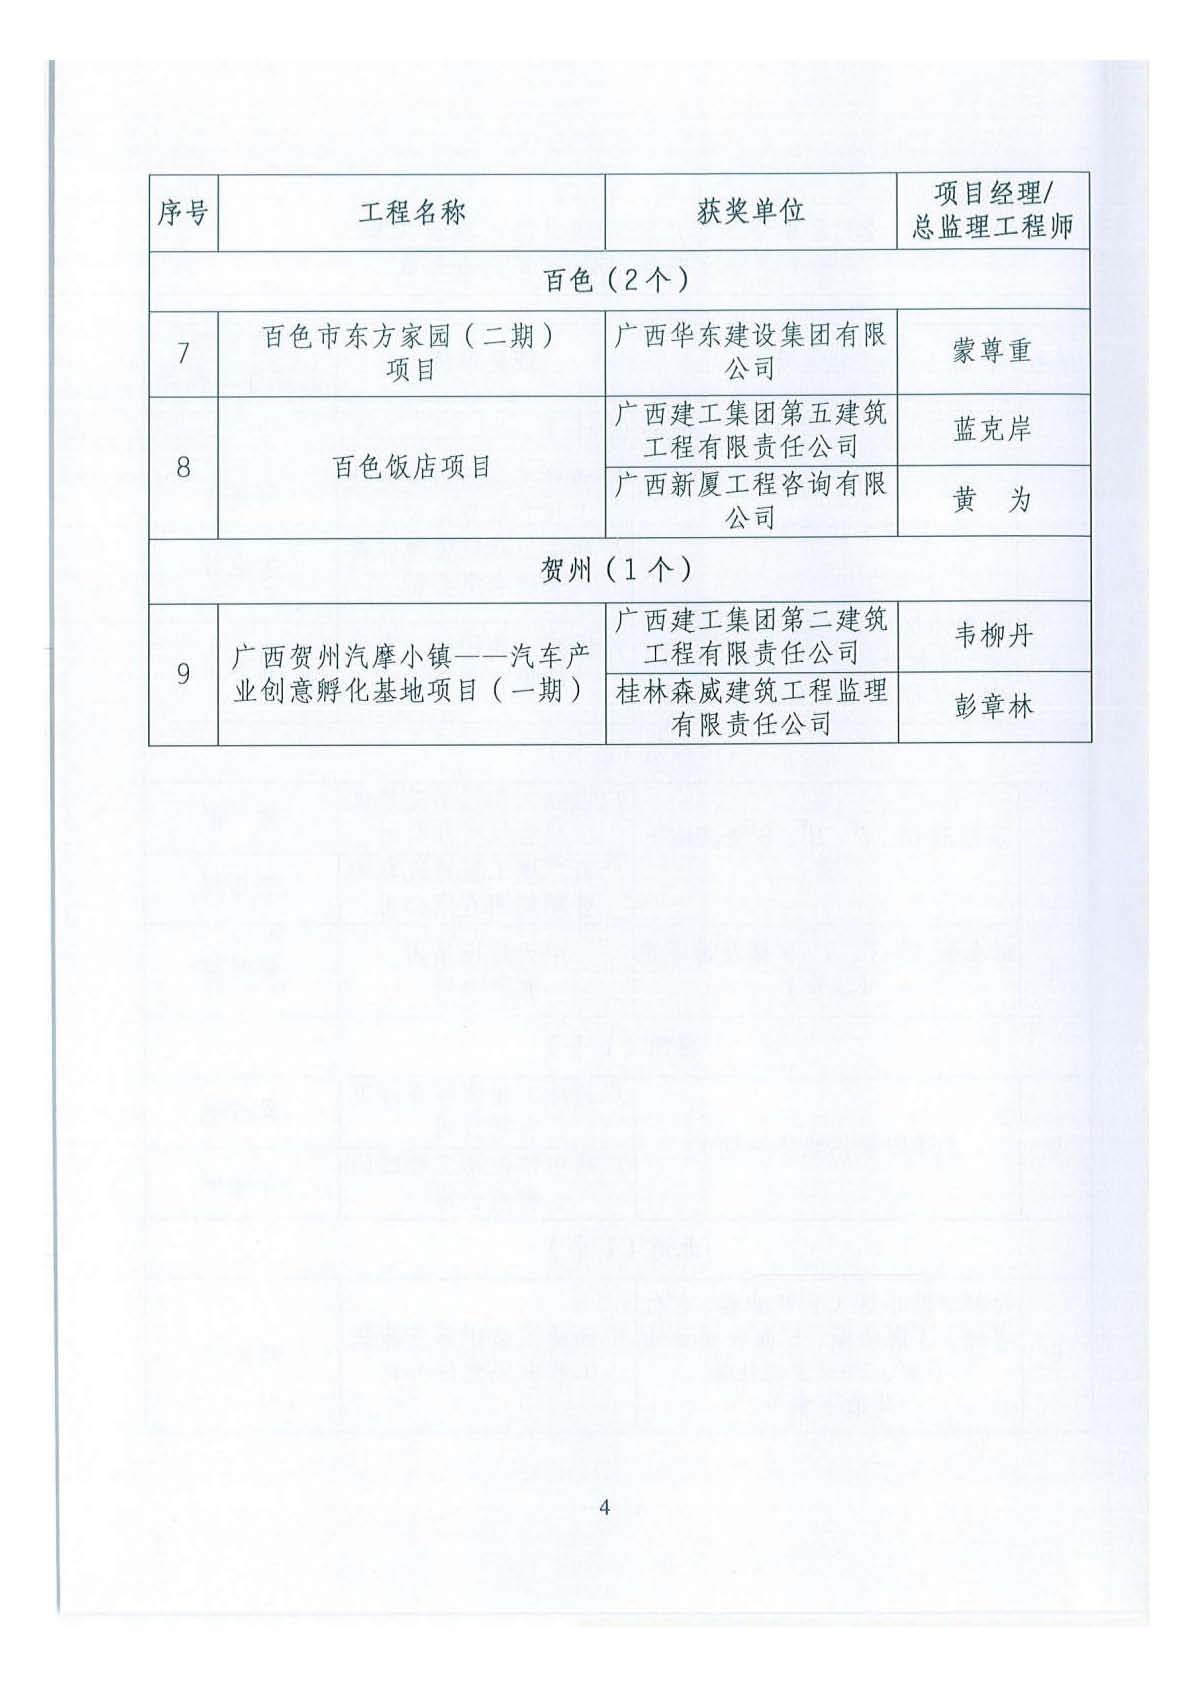 关于公布2018年下半年广西壮族自治区建设工程施工安全文明标准化工地的通知 _页面_04.jpg